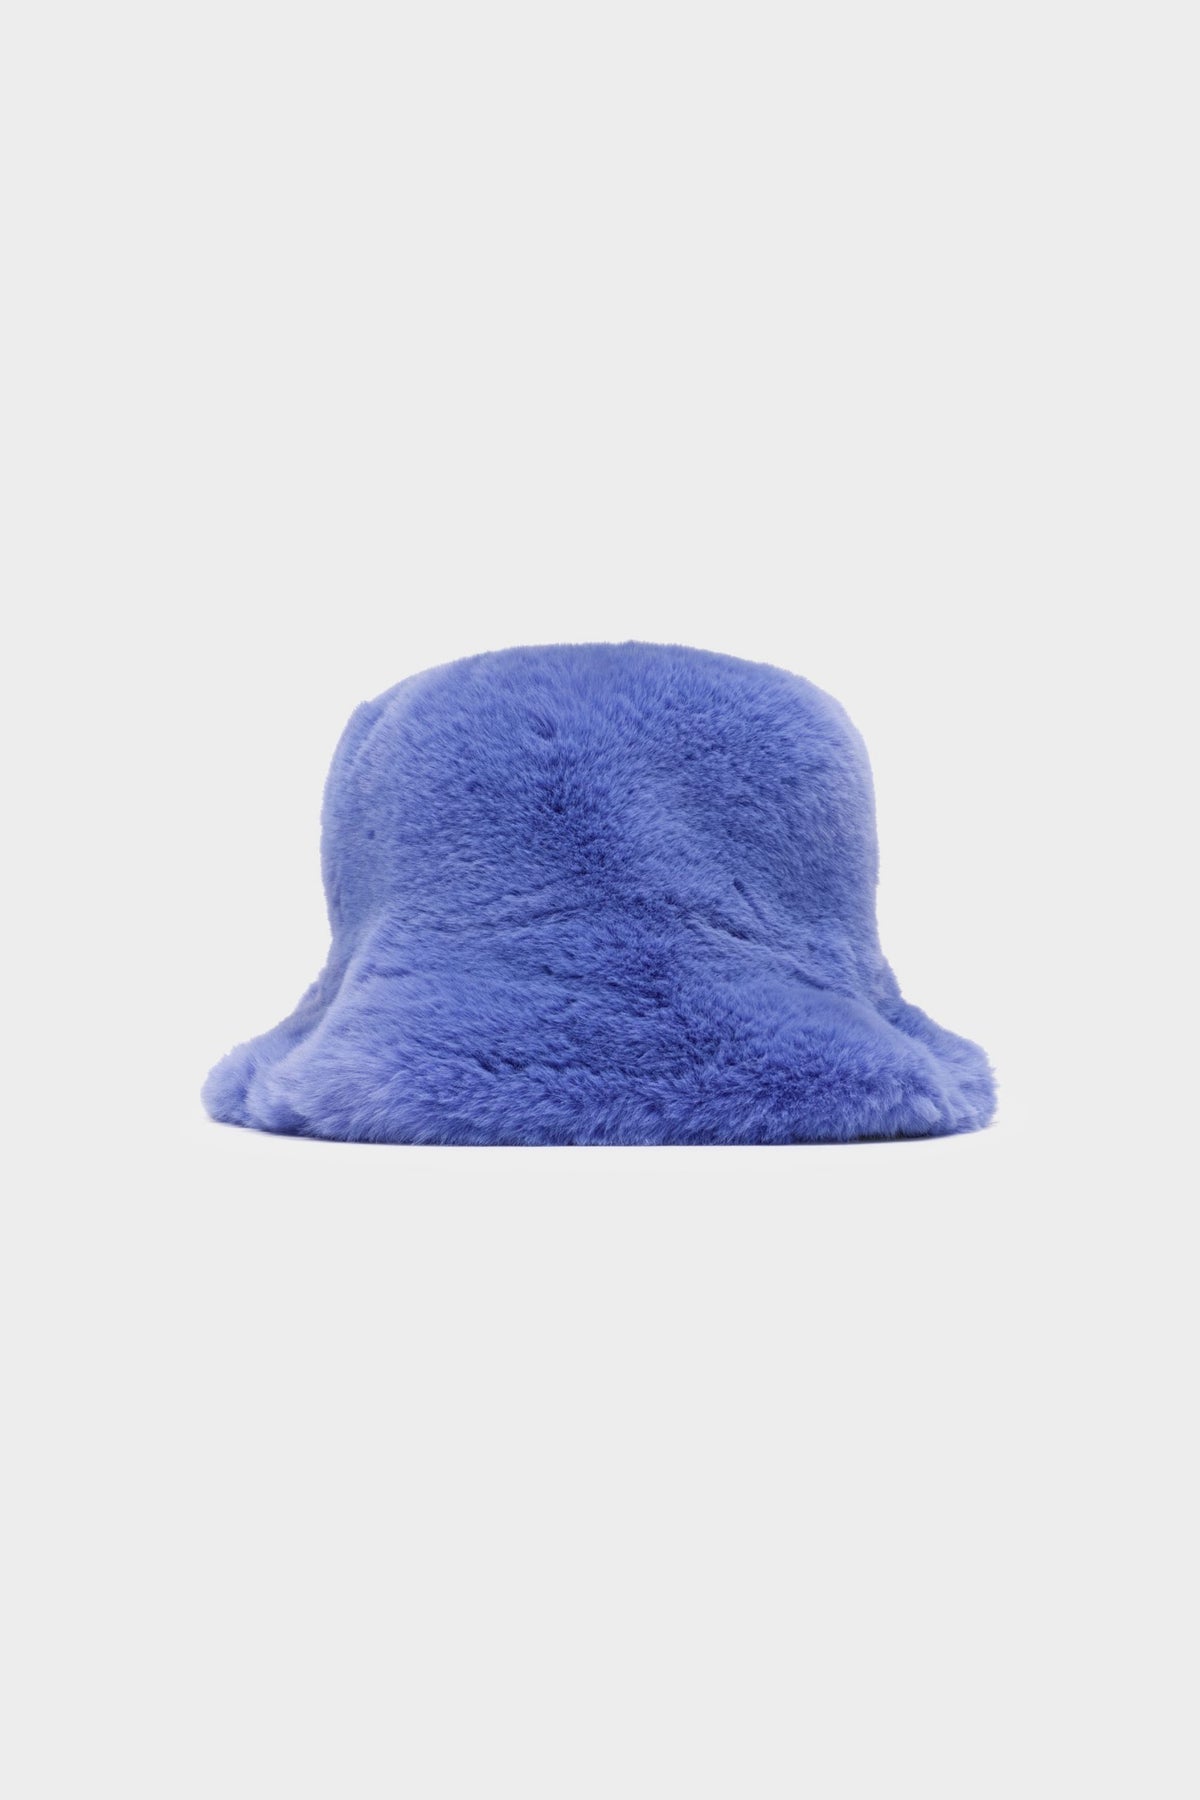 Vegancode – Reversible Bucket Hat